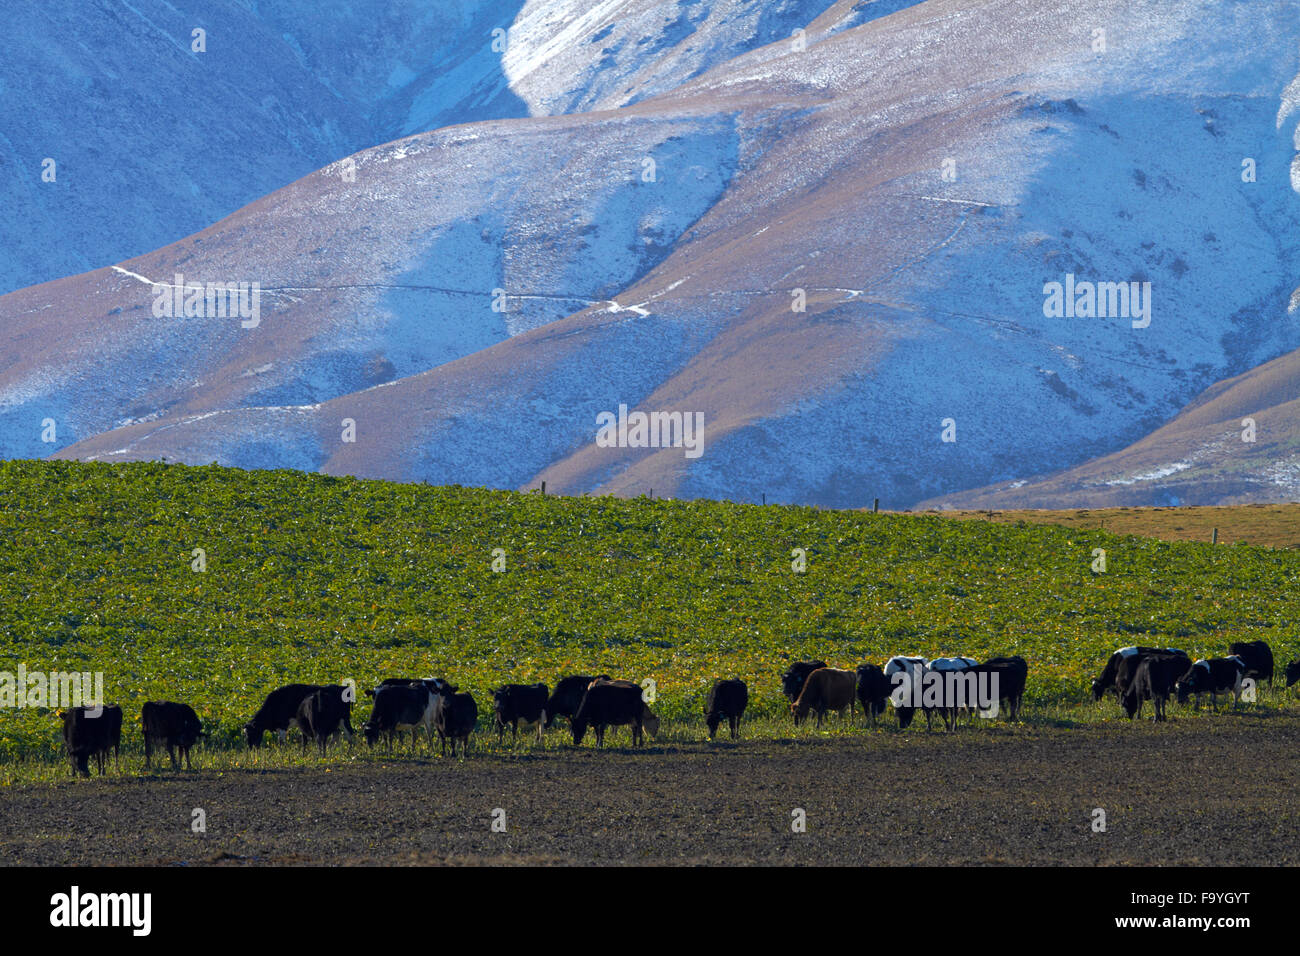 Las vacas y las montañas Kakanui Kyeburn, cerca de Ranfurly, Maniototo, Central Otago, Isla del Sur, Nueva Zelanda Foto de stock